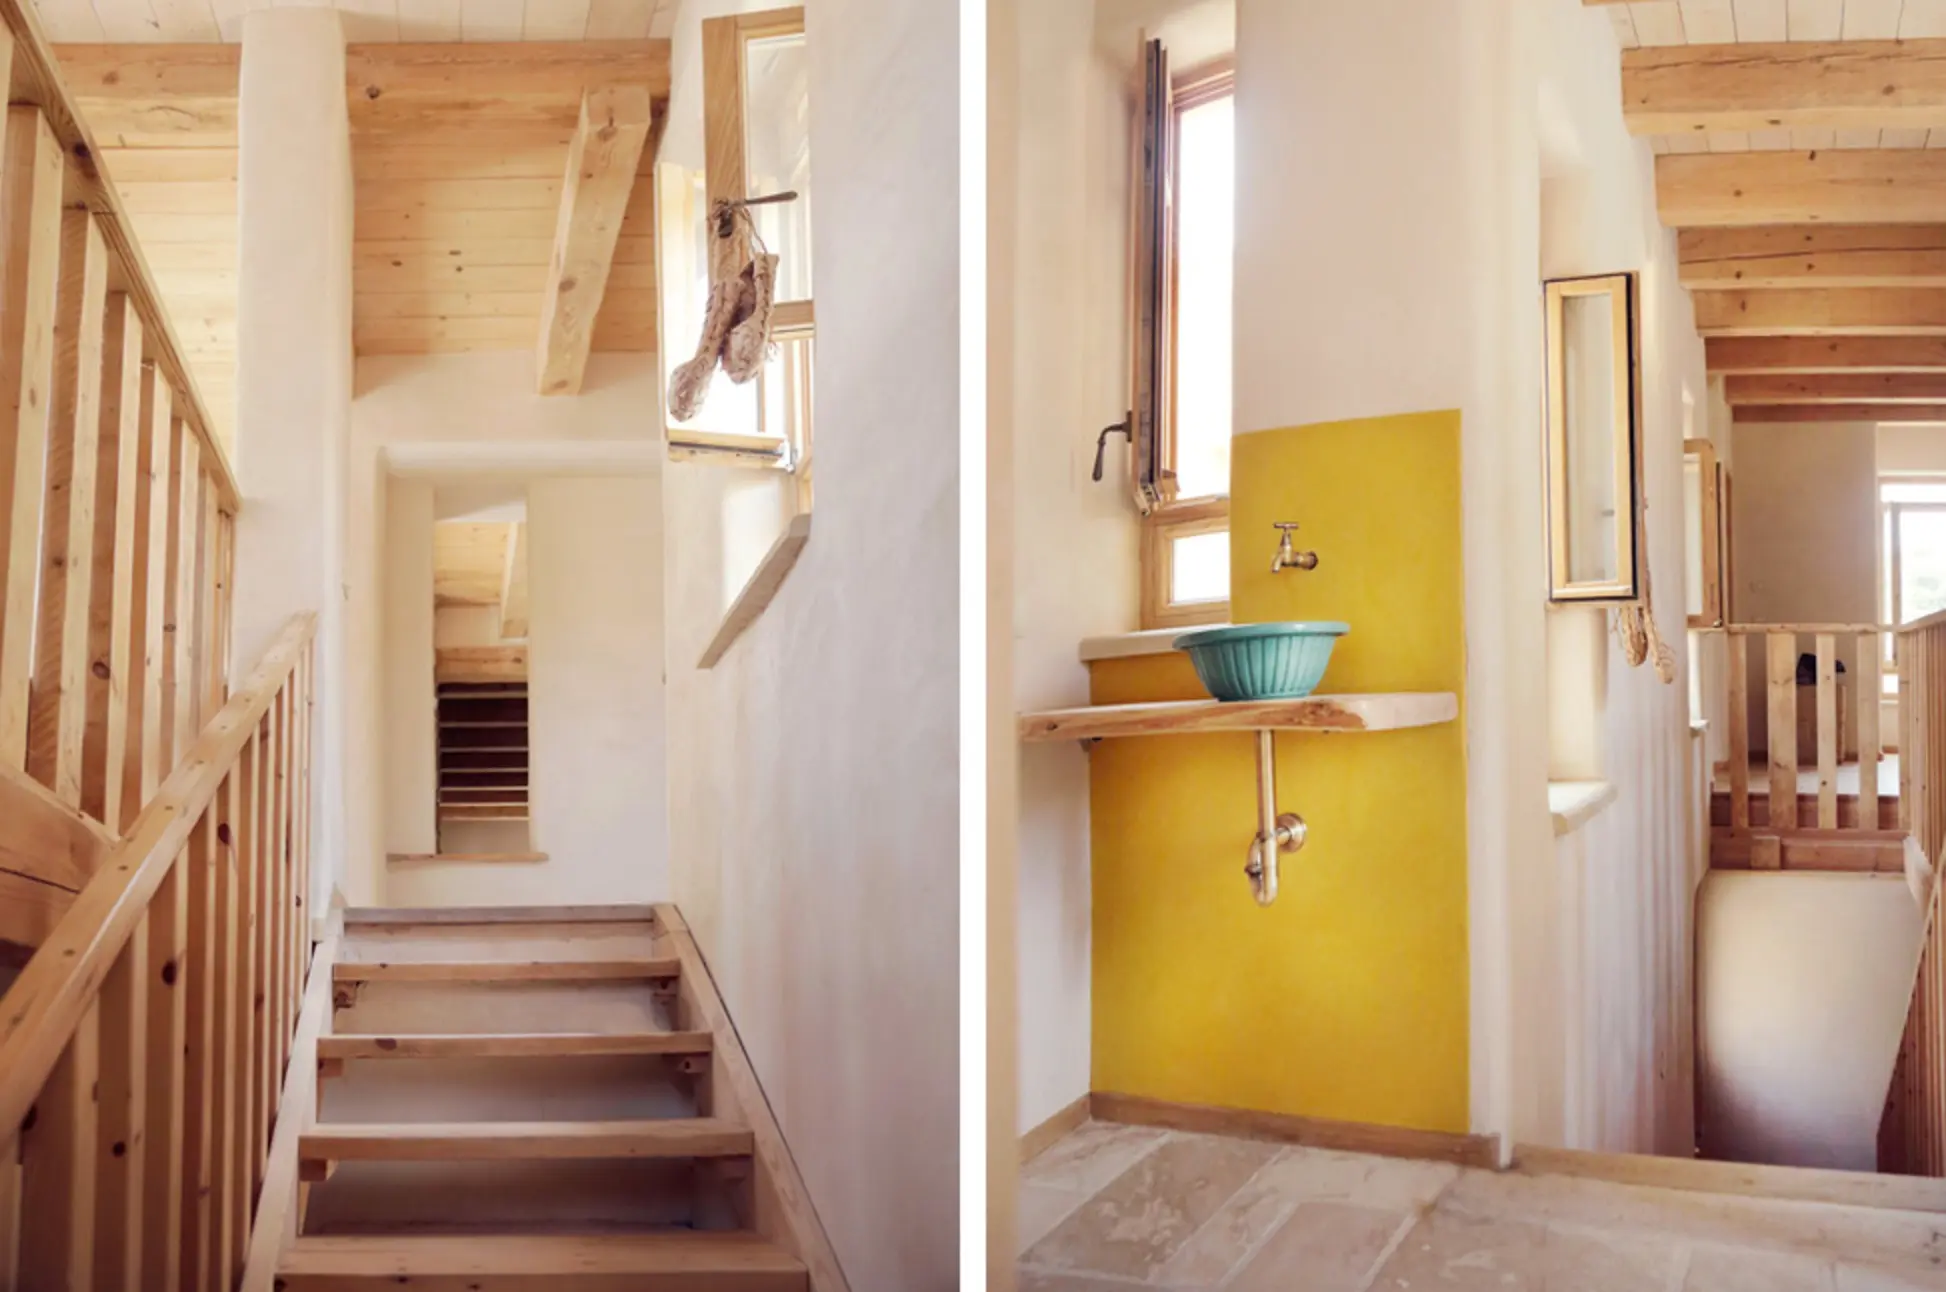 En images : découvrez une maison entièrement construite à base de chanvre